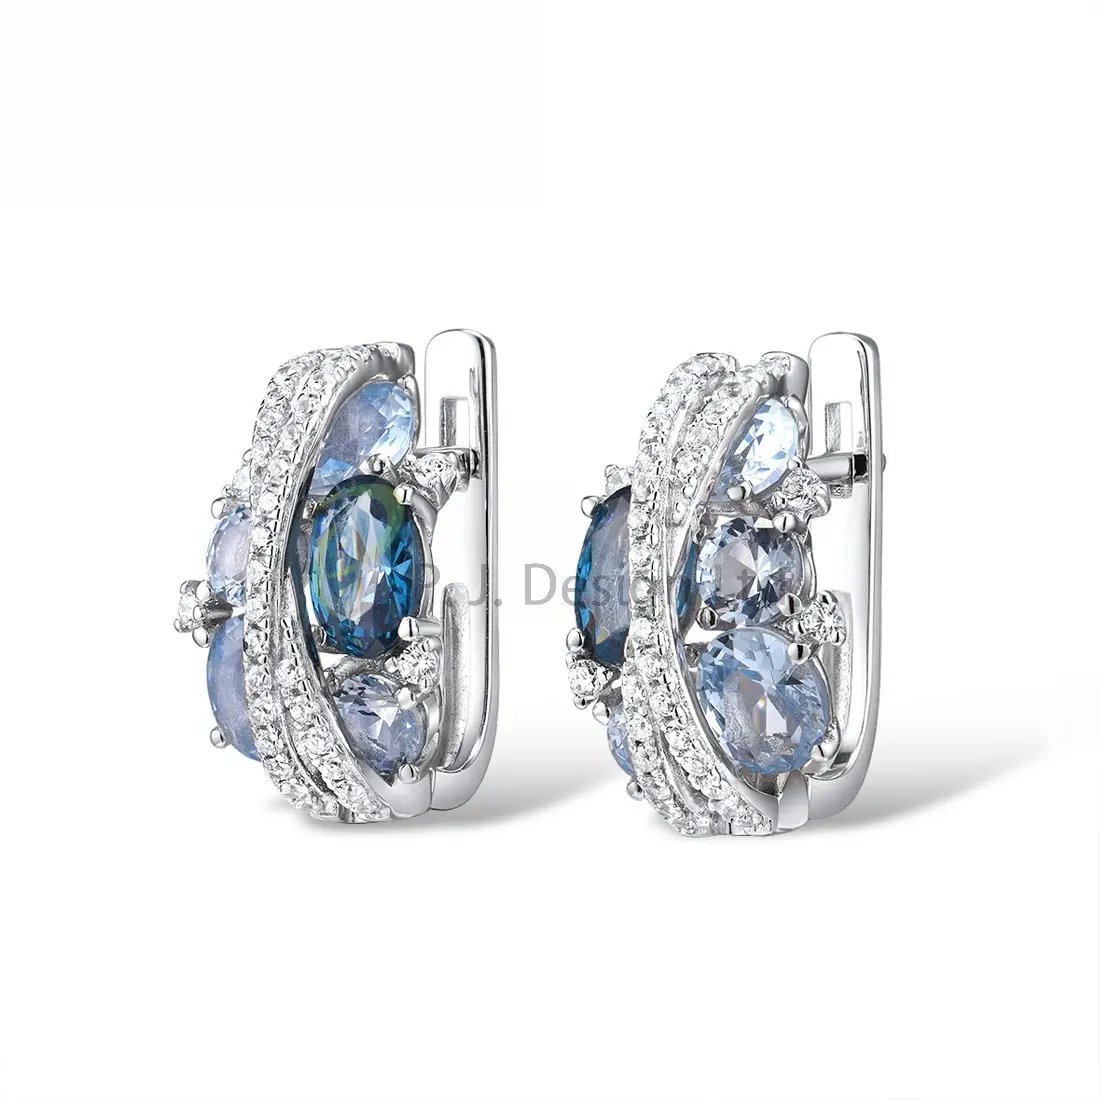 Cincin Warna Biru Spesial Kualitas Terbaik untuk Wanita Perhiasan CZ Putih Perak Murni 925 untuk Hari Jadi